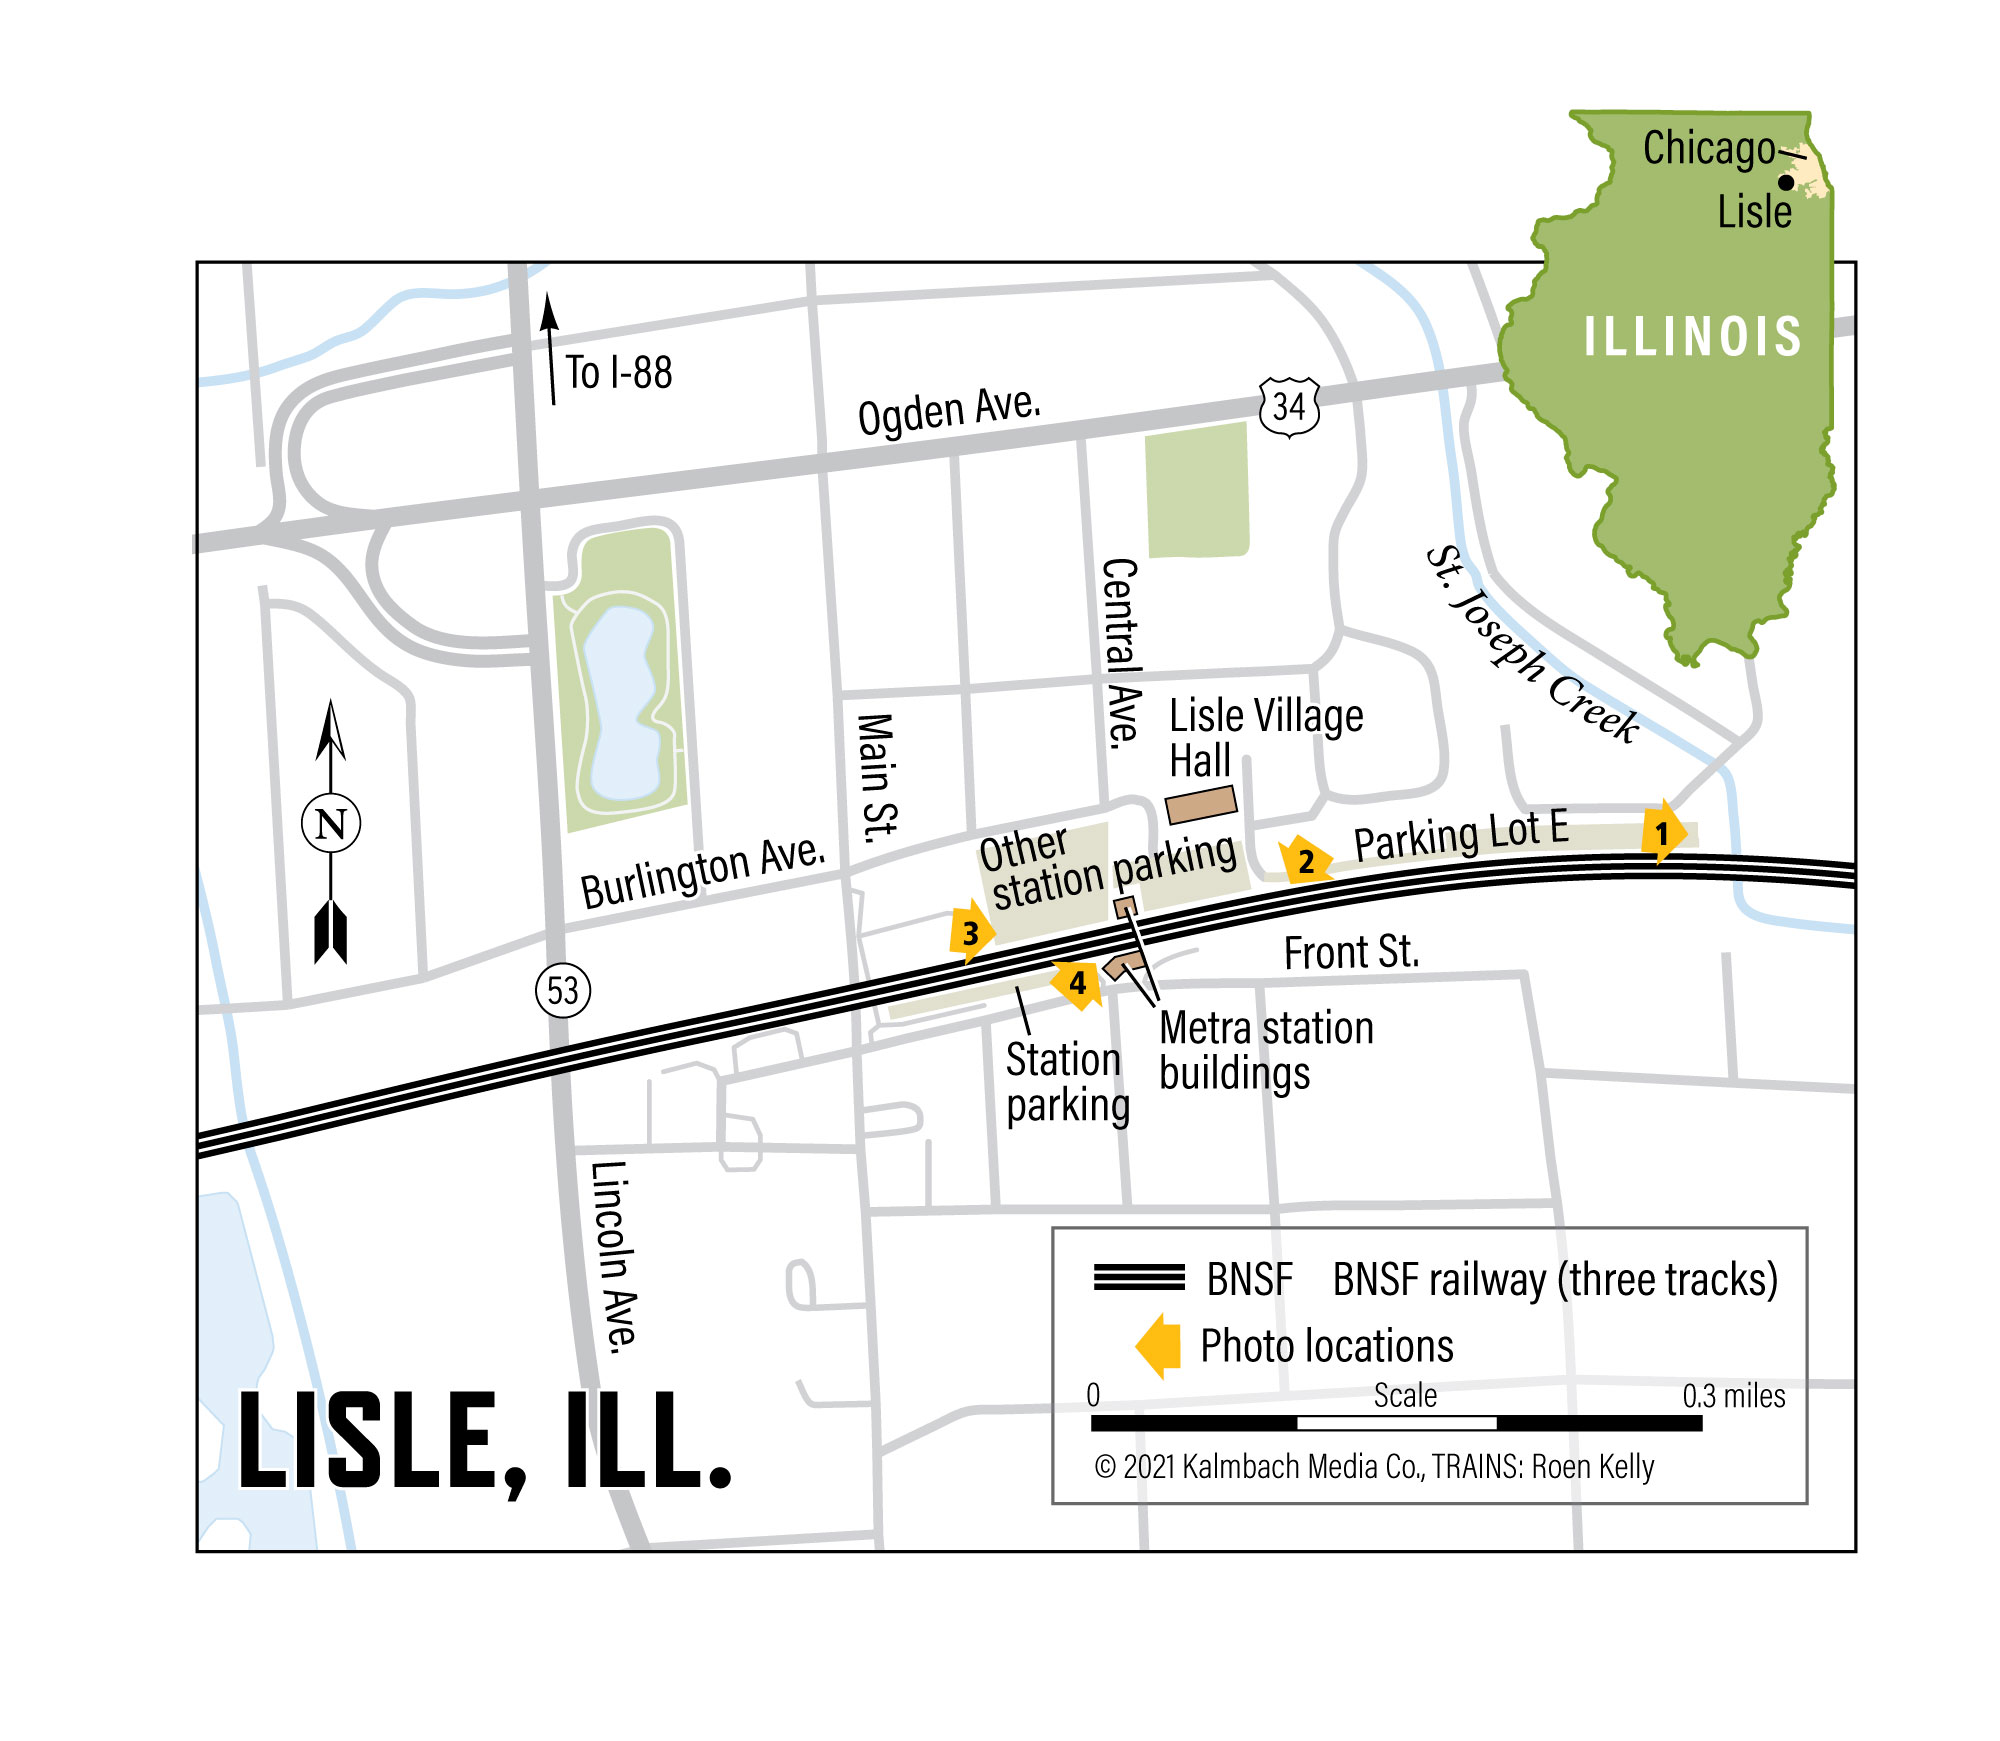 Chicago railfanning map of Lisle, Illinois